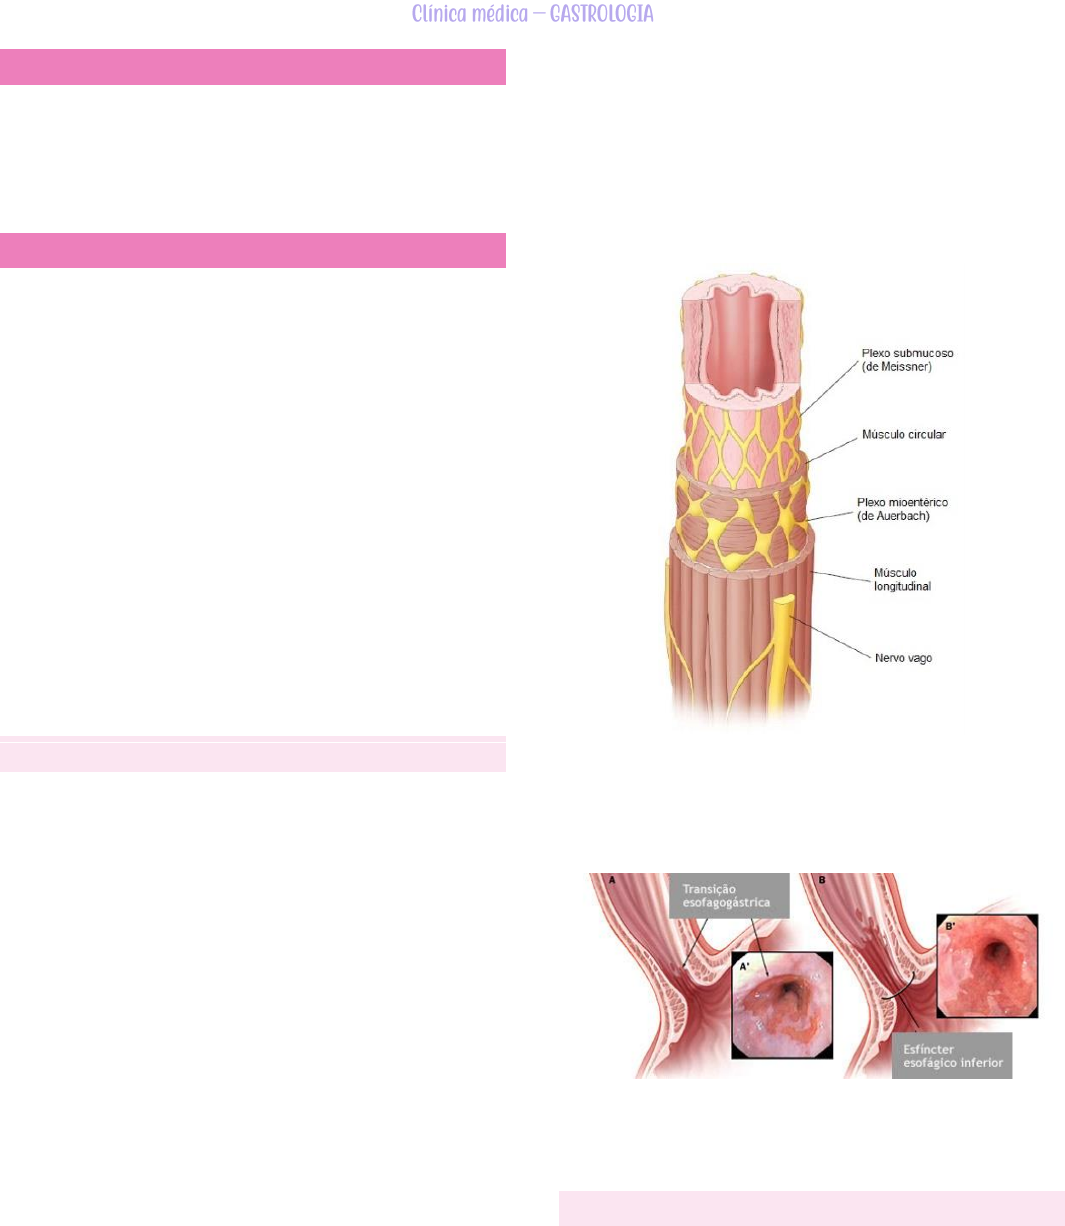 Resultados da dilatação endoscópica versus a cardiomiotomia em